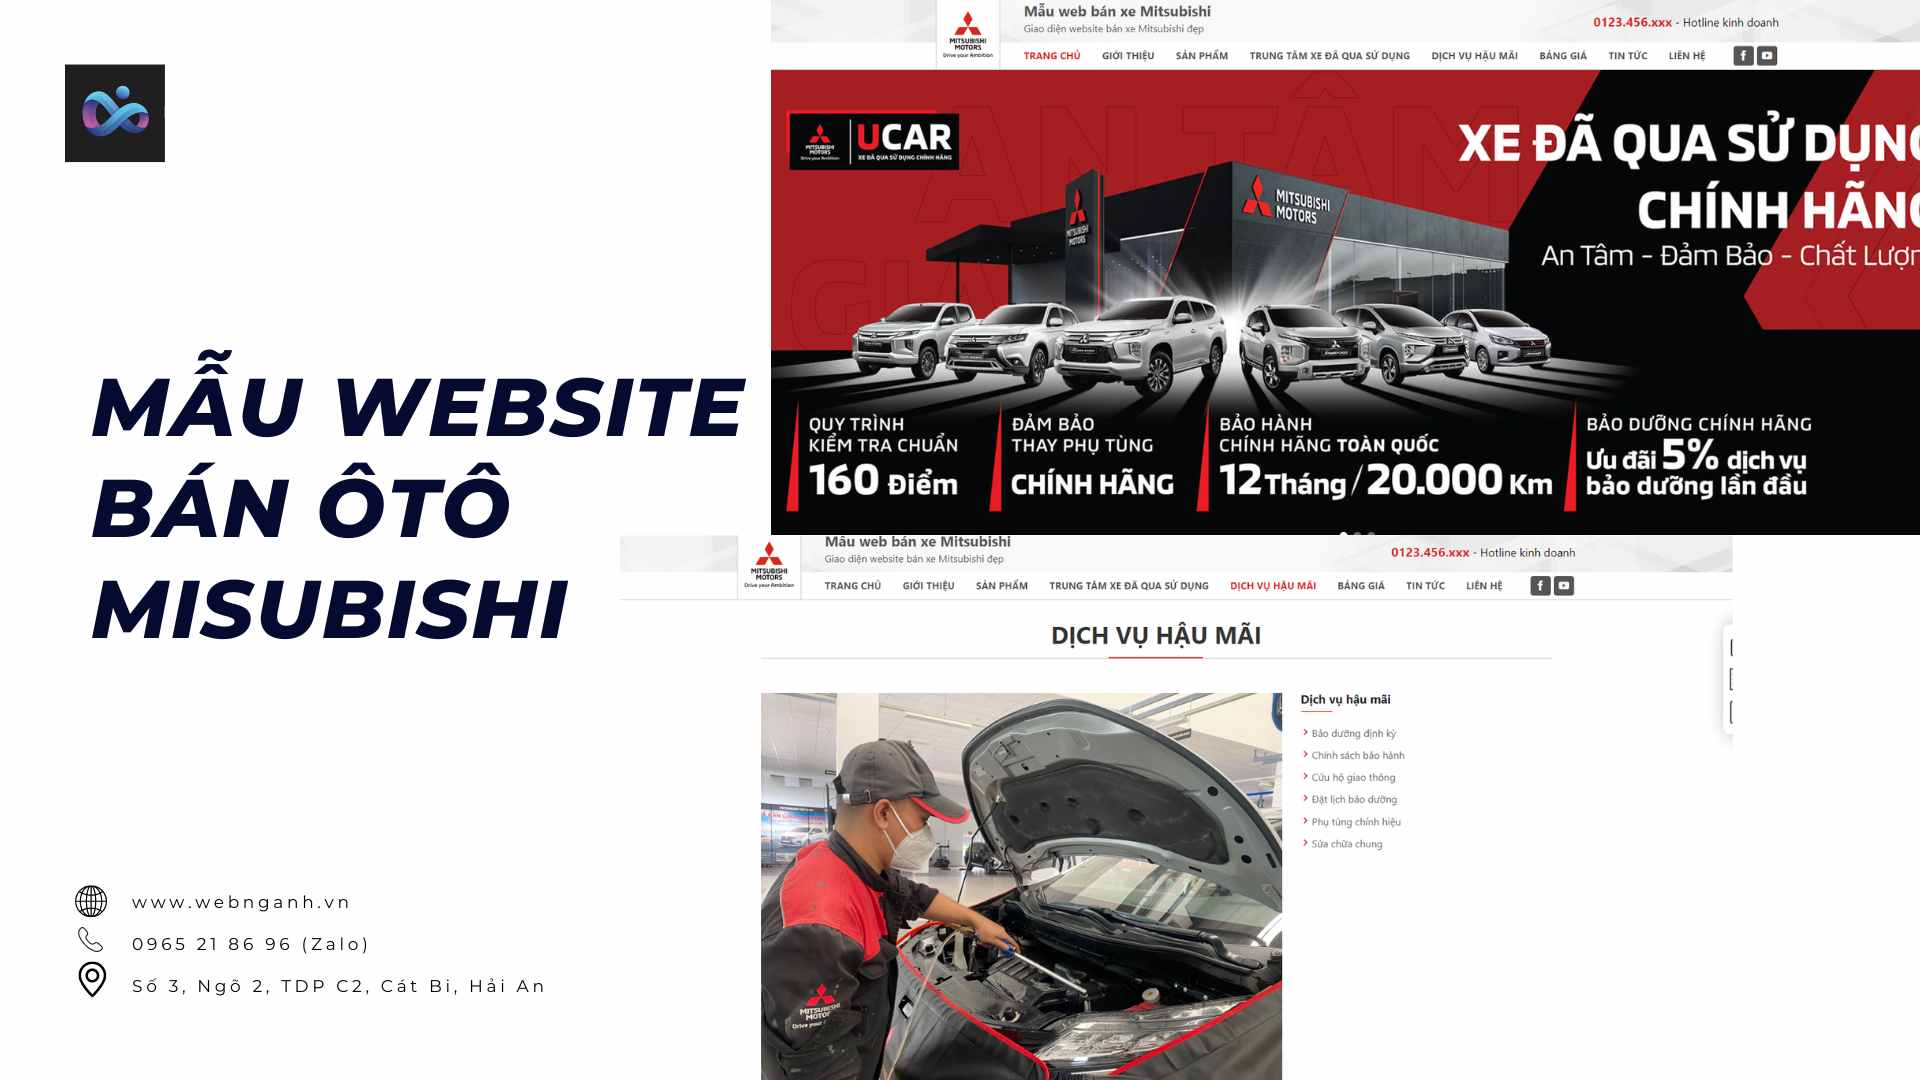 Mẫu website bán ôtô Misubishi